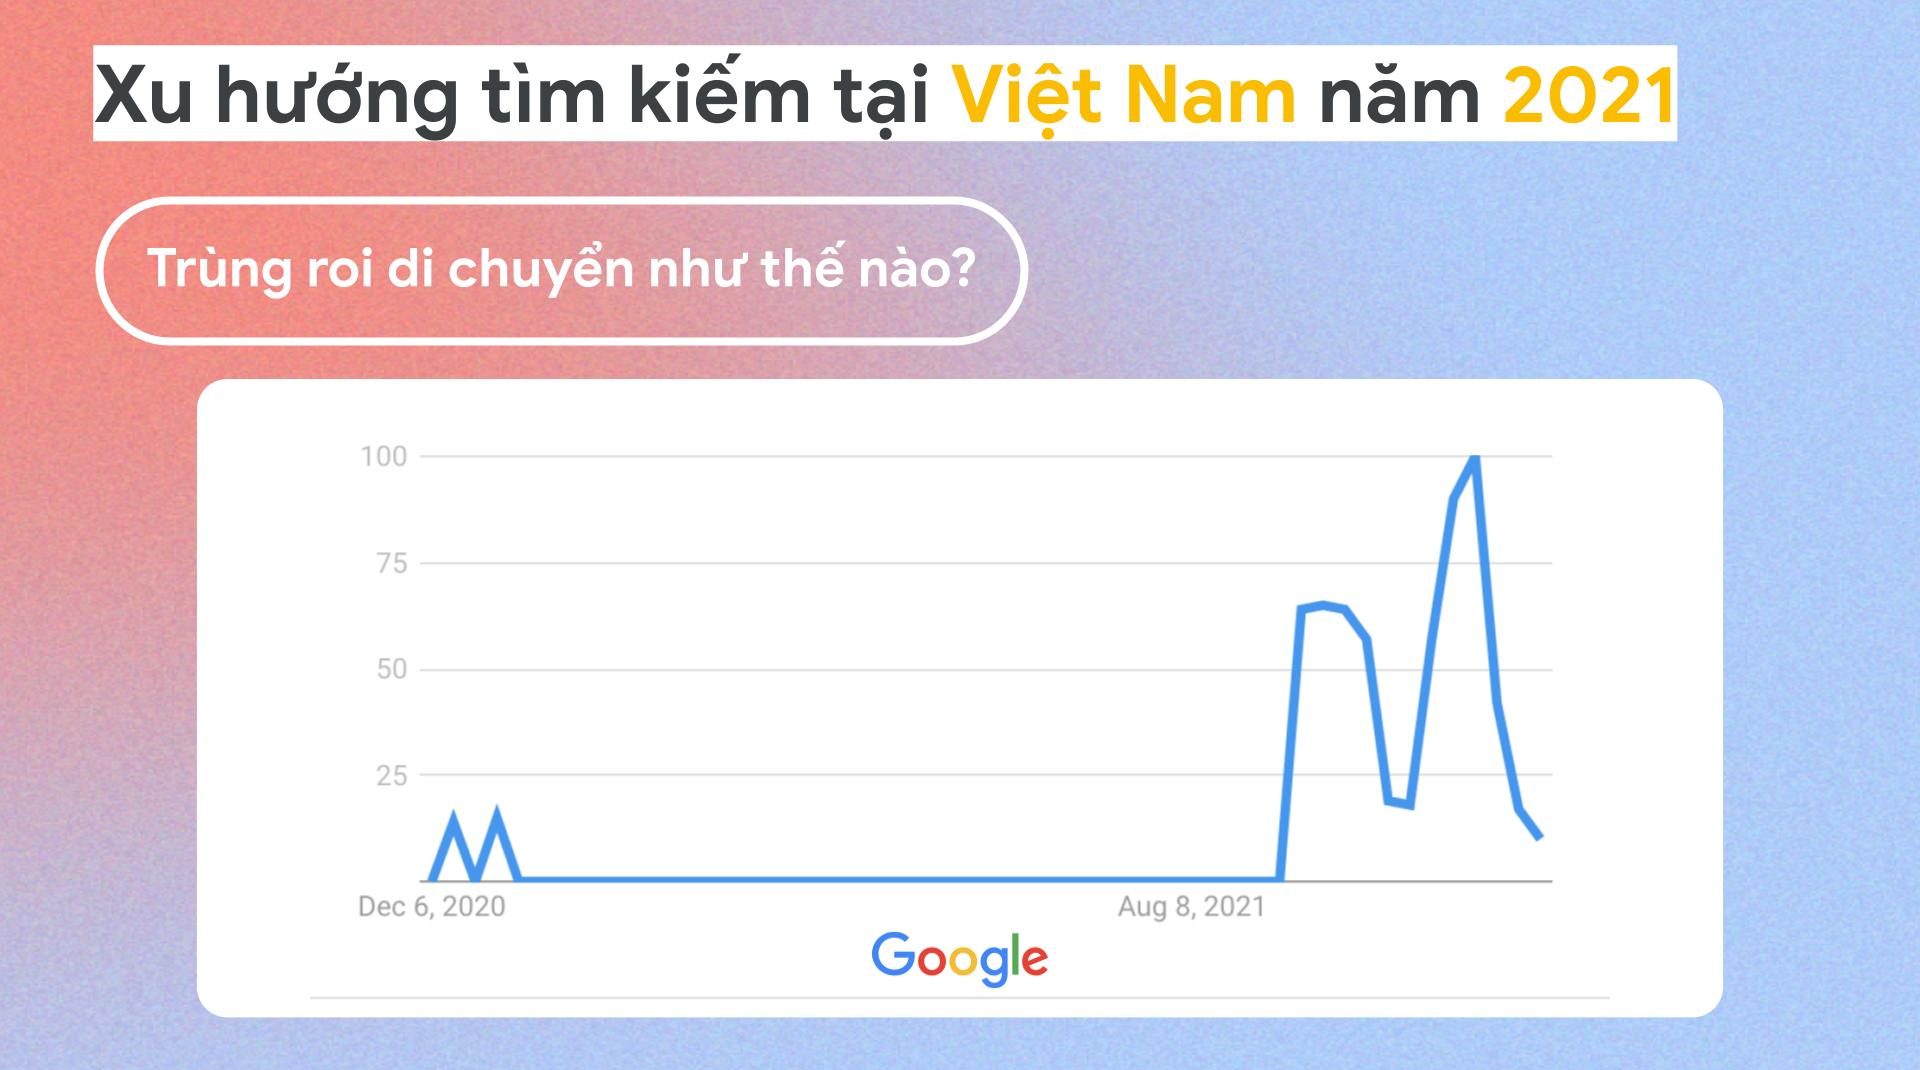 Xu hướng tìm kiếm của người Việt trên Google khi ở nhà như thế nào?